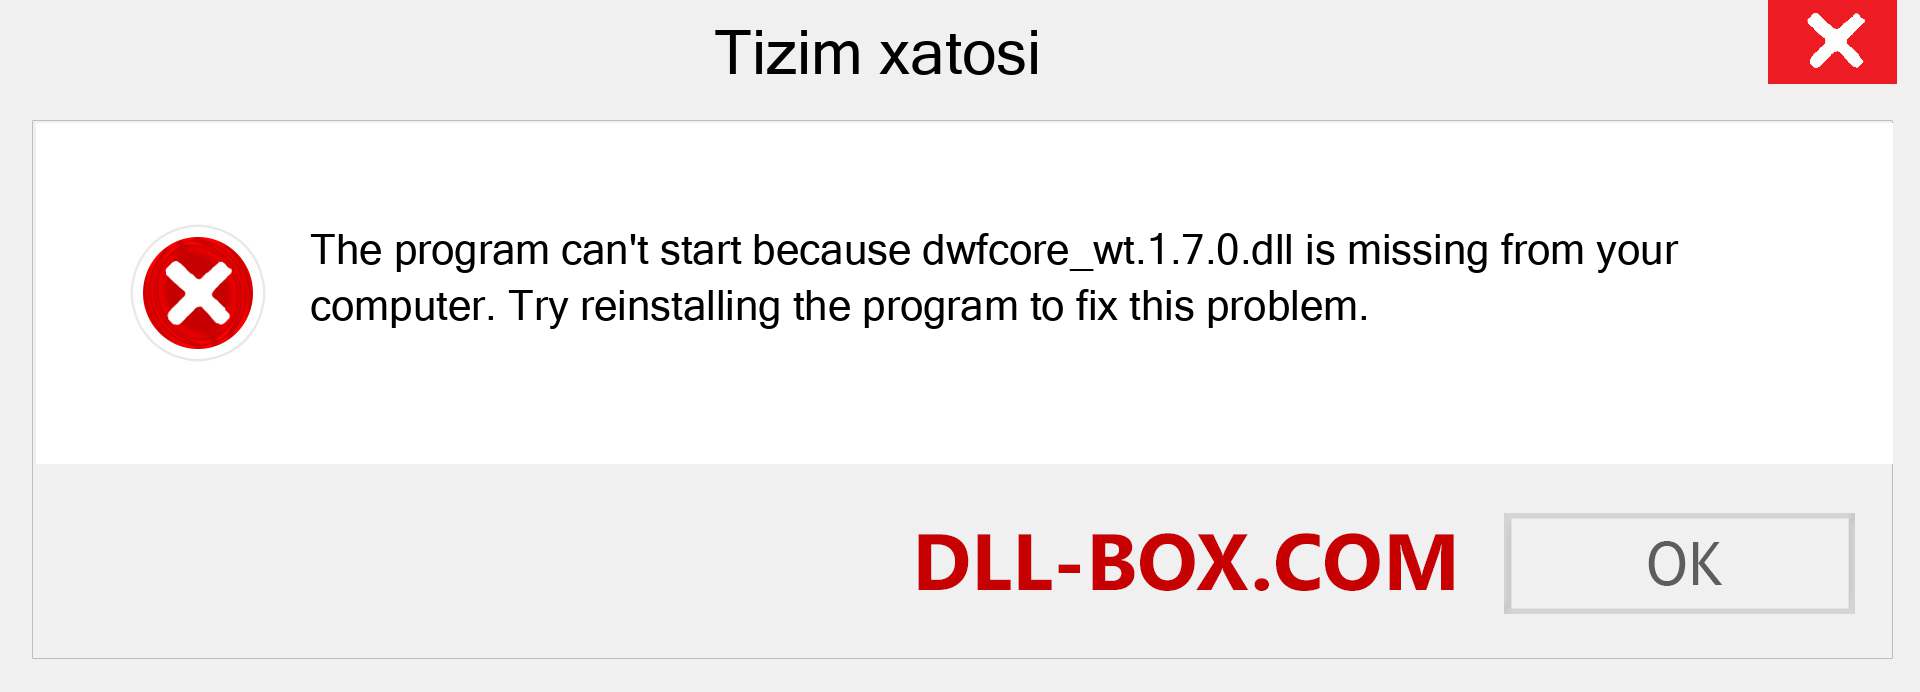 dwfcore_wt.1.7.0.dll fayli yo'qolganmi?. Windows 7, 8, 10 uchun yuklab olish - Windowsda dwfcore_wt.1.7.0 dll etishmayotgan xatoni tuzating, rasmlar, rasmlar